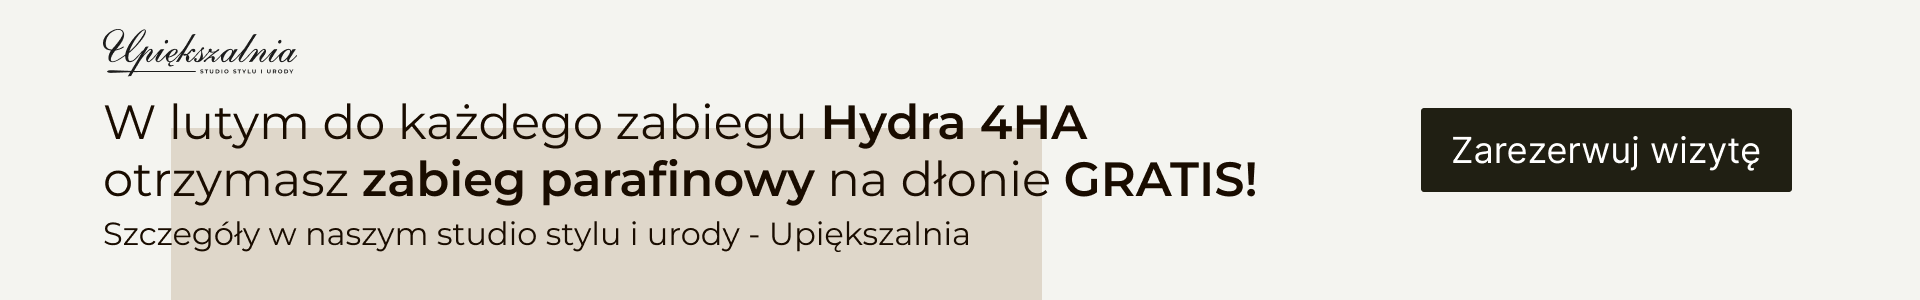 W lutym do każdego zabiegu Hydra 4HA otrzymasz zabieg parafinowy na dłonie GRATIS! 